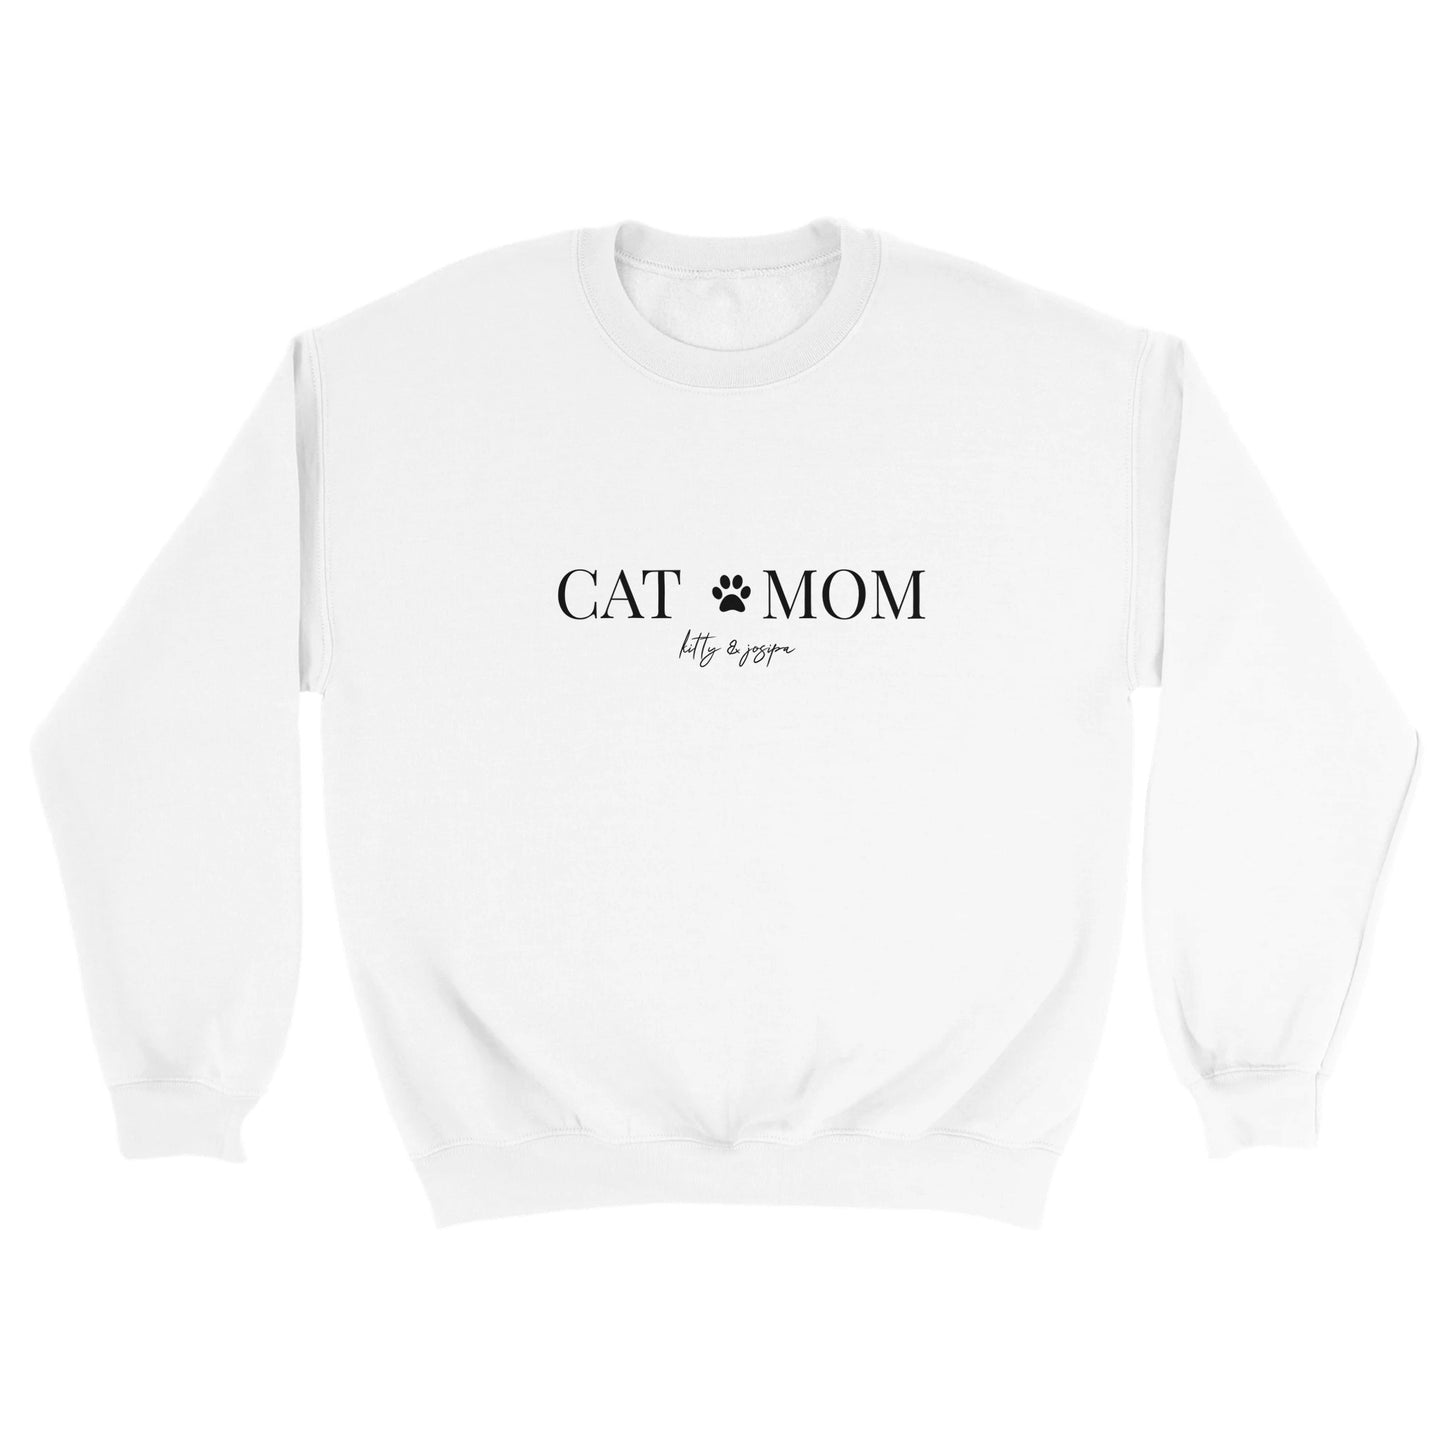 Unisex Sweater - [CAT MOM]